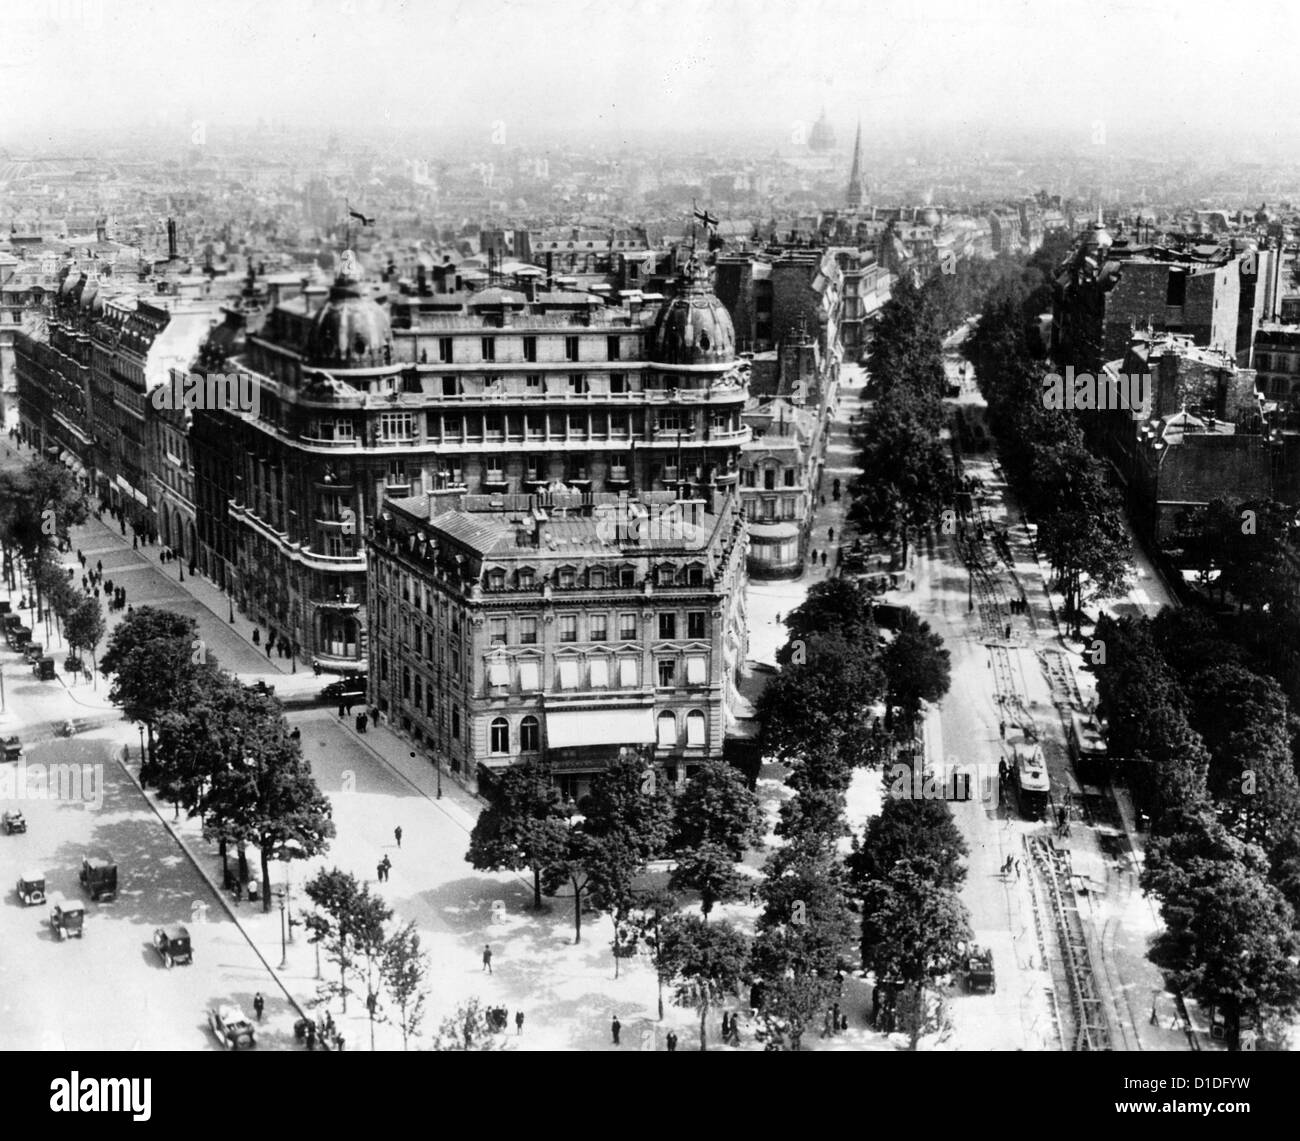 Blick auf die Avenue Marceau (r) und die Champs Elysees (l) vom Triumphbogen auf dem Place de l'Etoile (heute Place Charles-de-Gaulle) während der deutschen Besatzung. Datum unbekannt (um 1940 Uhr). Fotoarchiv für Zeitgeschichte Stockfoto